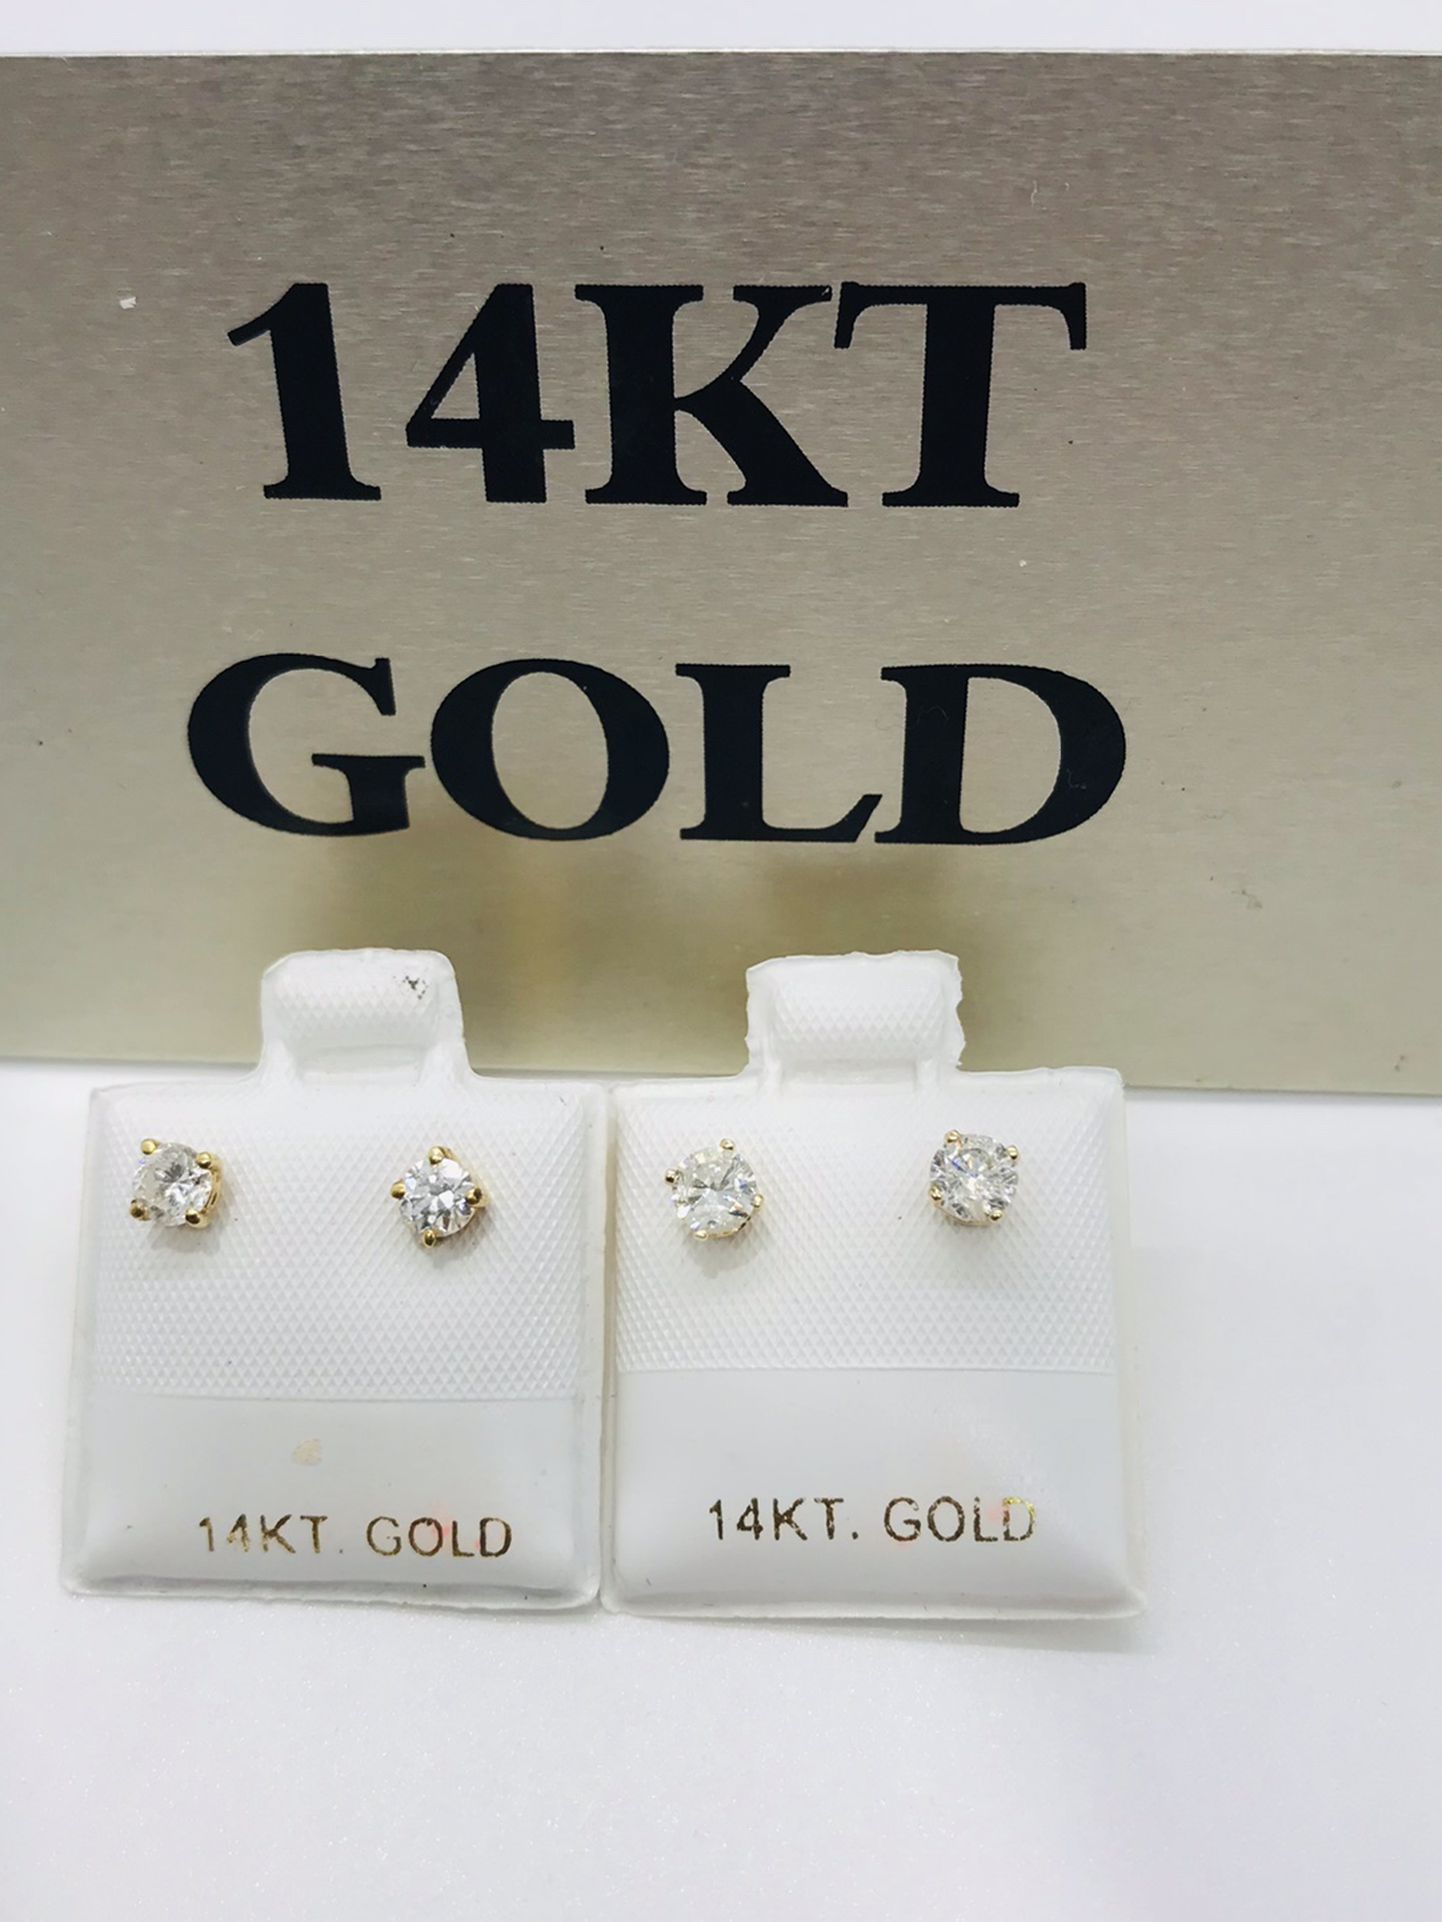 Brand new! Diamond stud earrings! See description for details